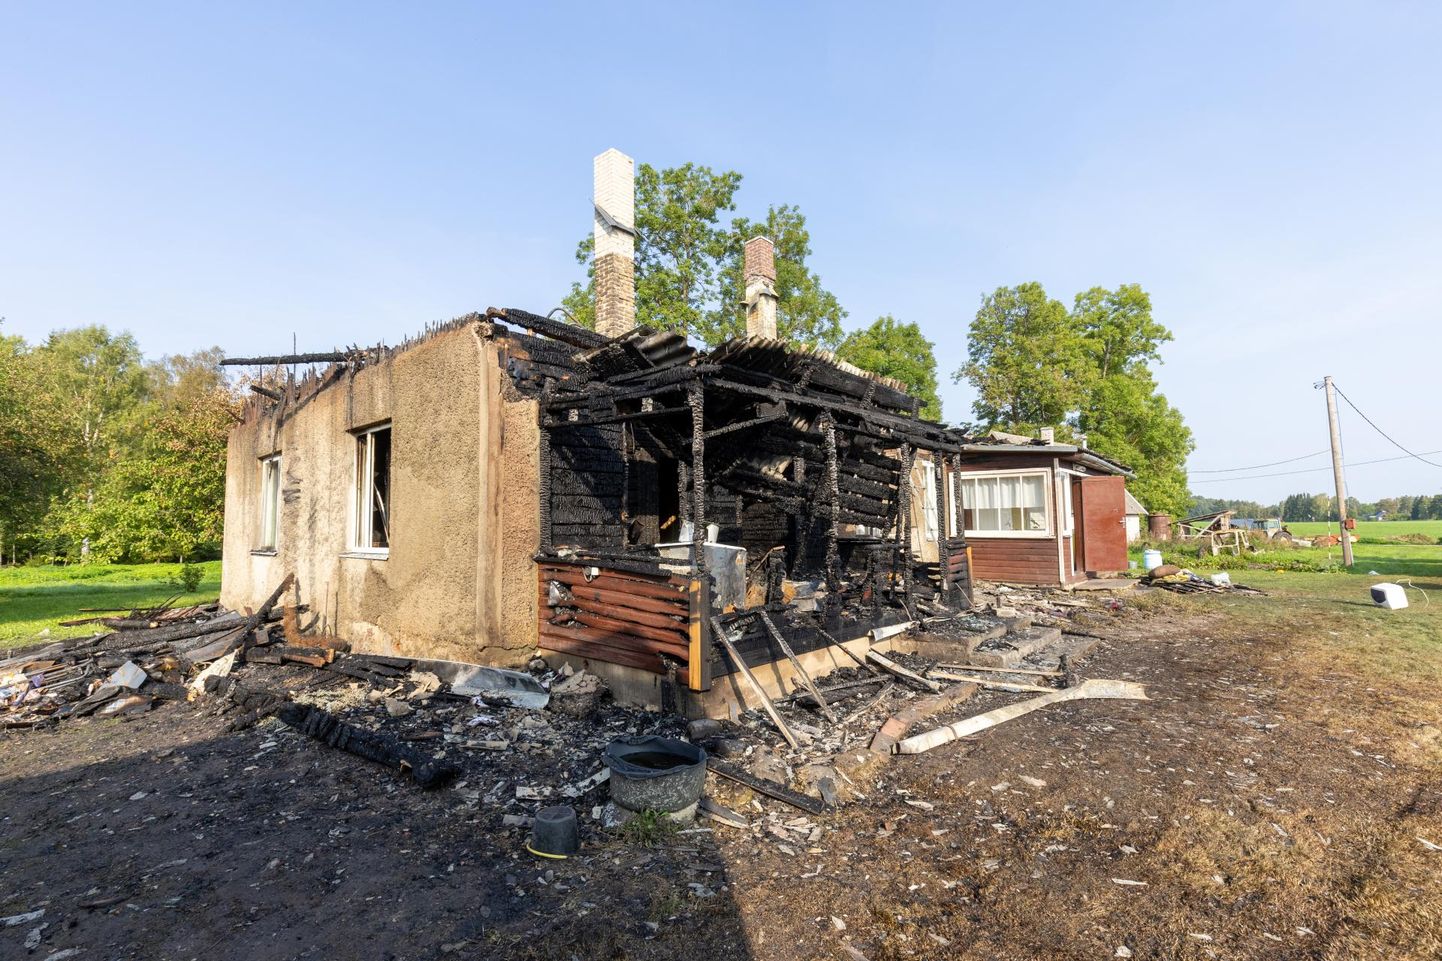 Inimesed tulekahjus viga ei saanud, kuid maja on hävinud.